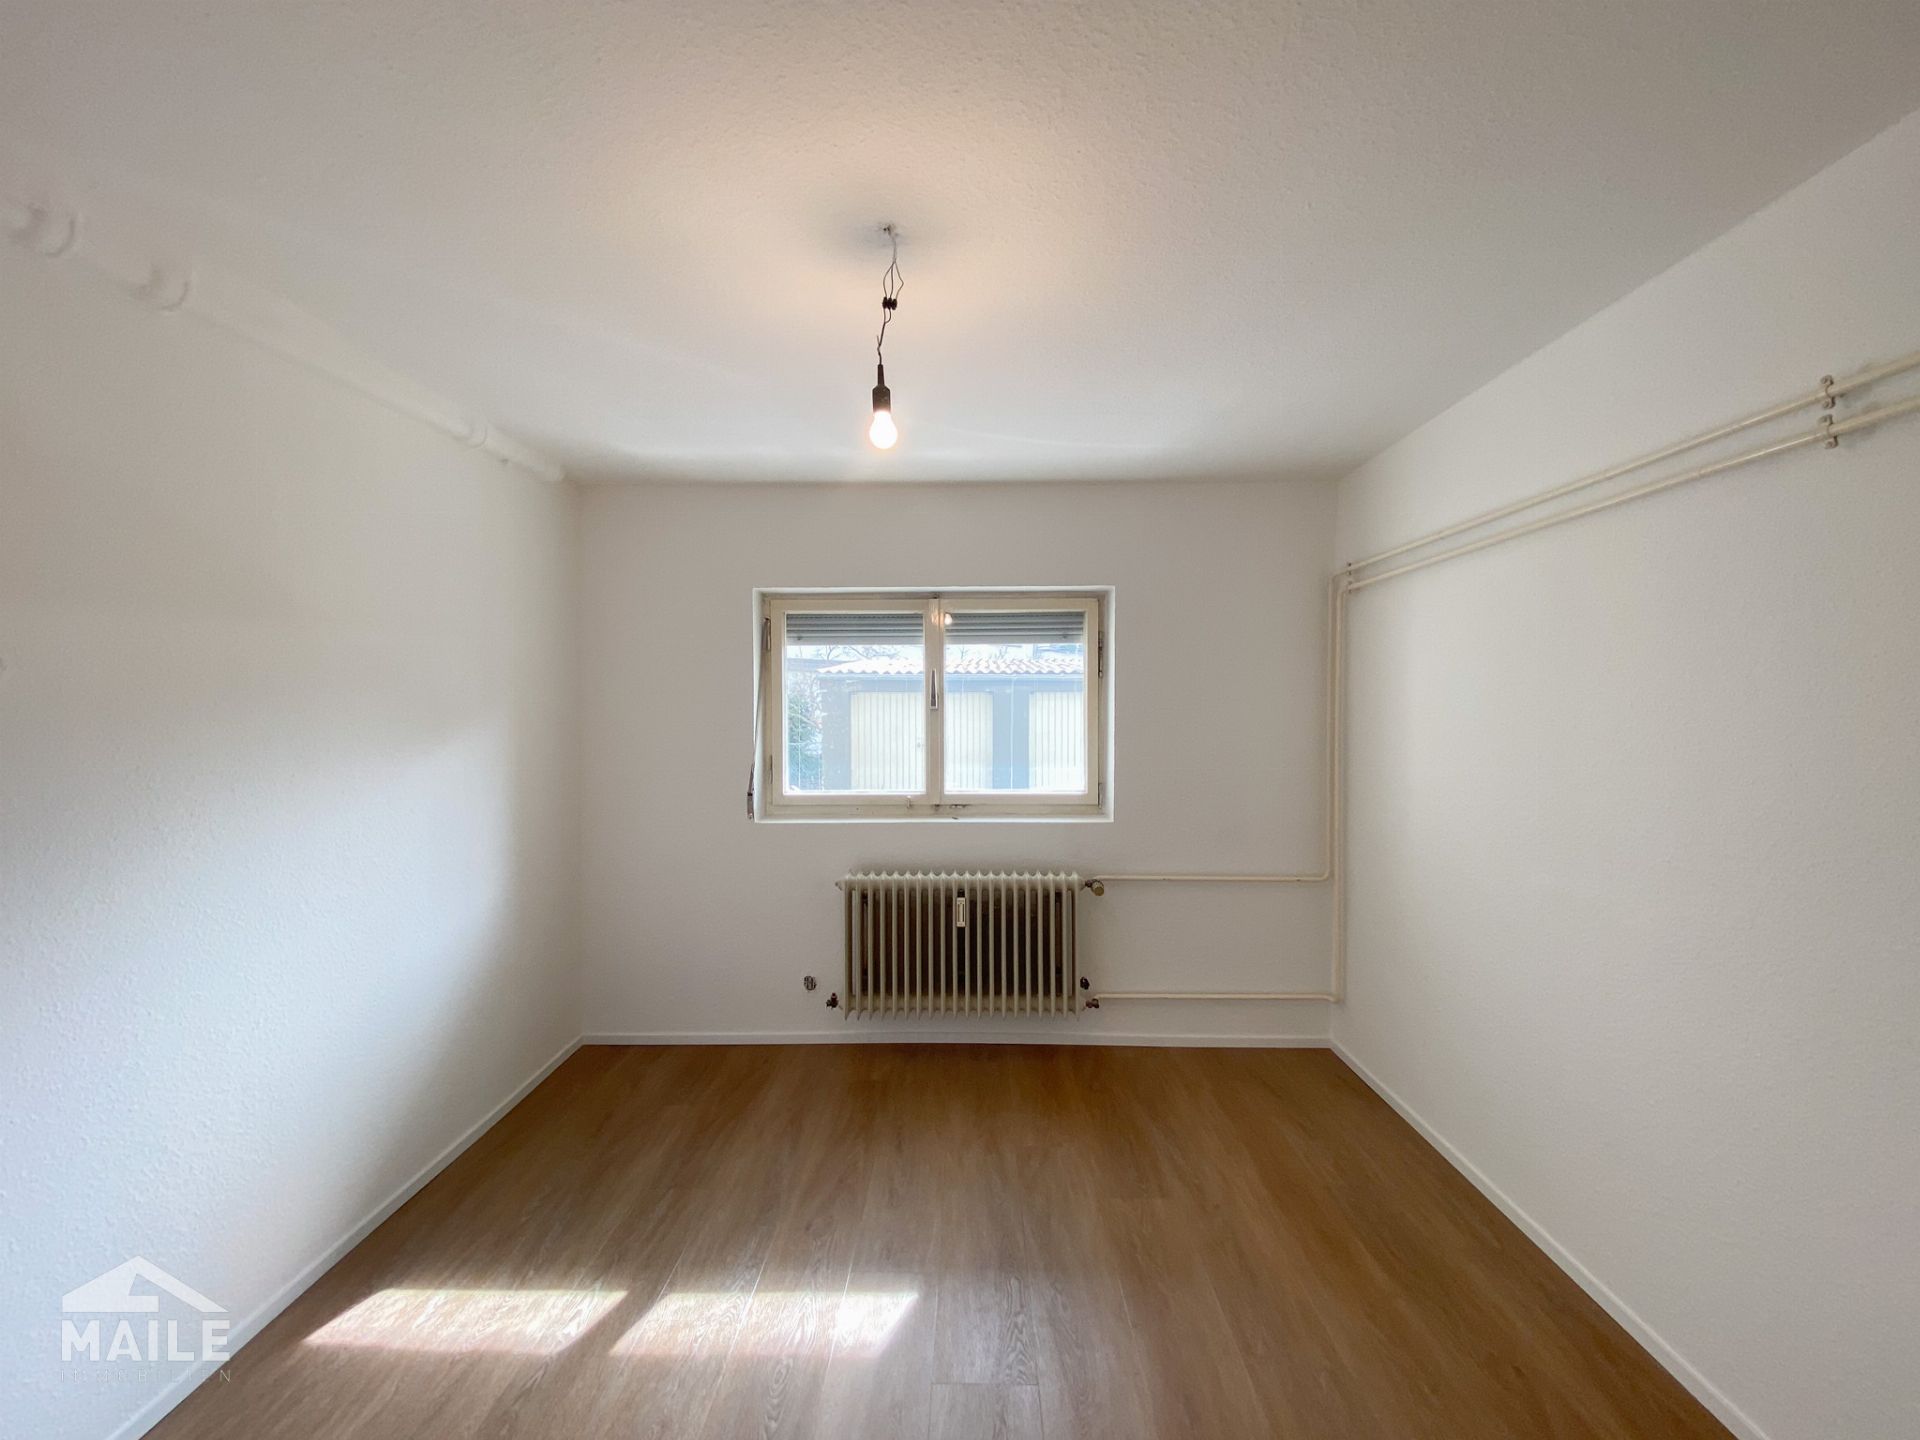 Frisch renovierte 4-Zimmer-Wohnung mit sonnigem Balkon, großem Hobbyraum und Garage! - Hobbyraum/ Home Office